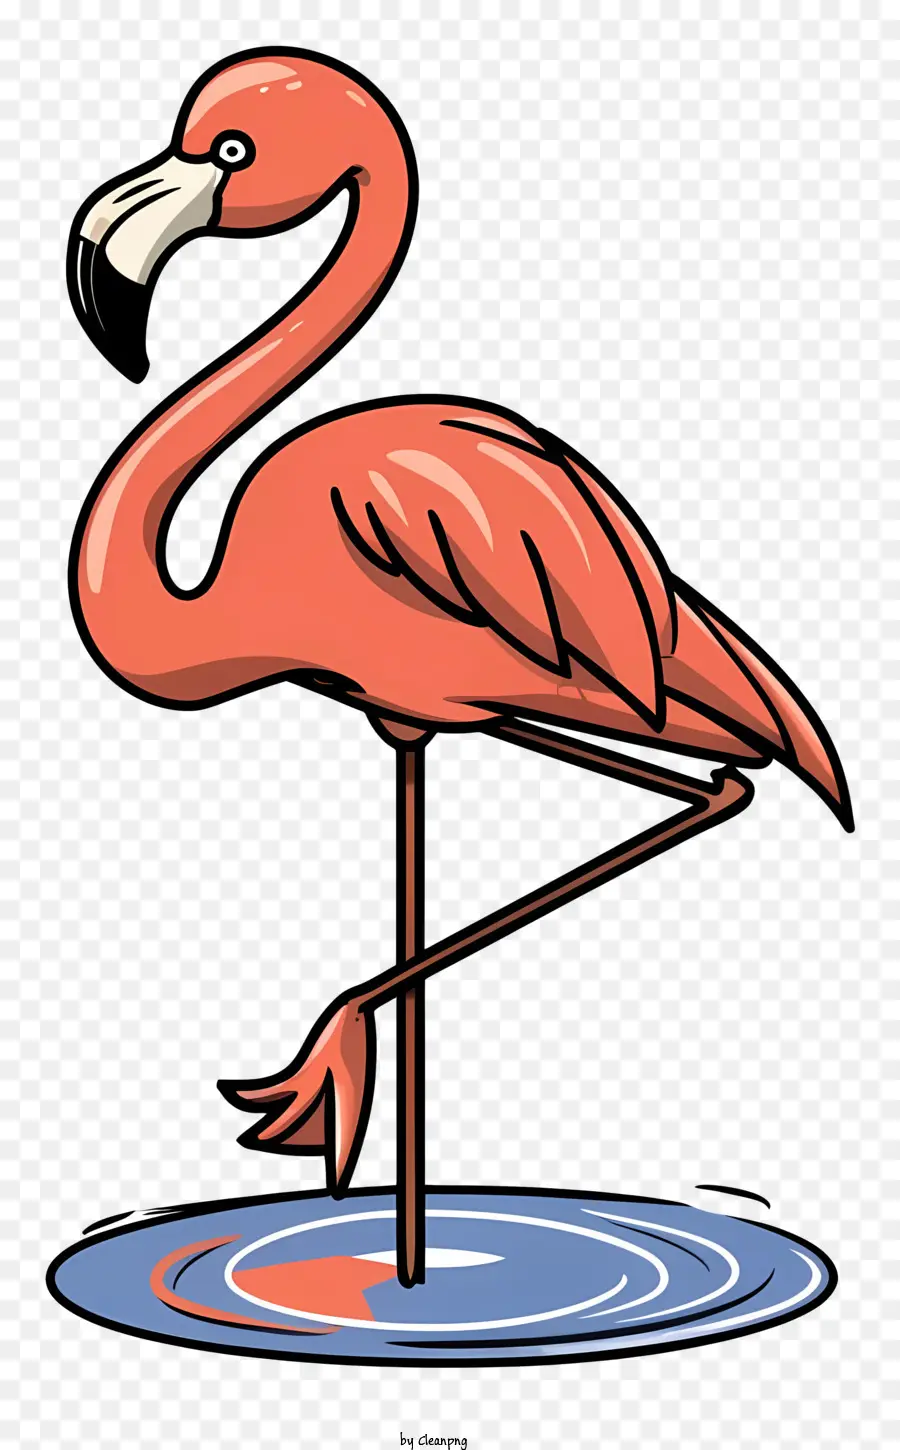 Flamingo - Roter Flamingo, der im flachen Teich steht